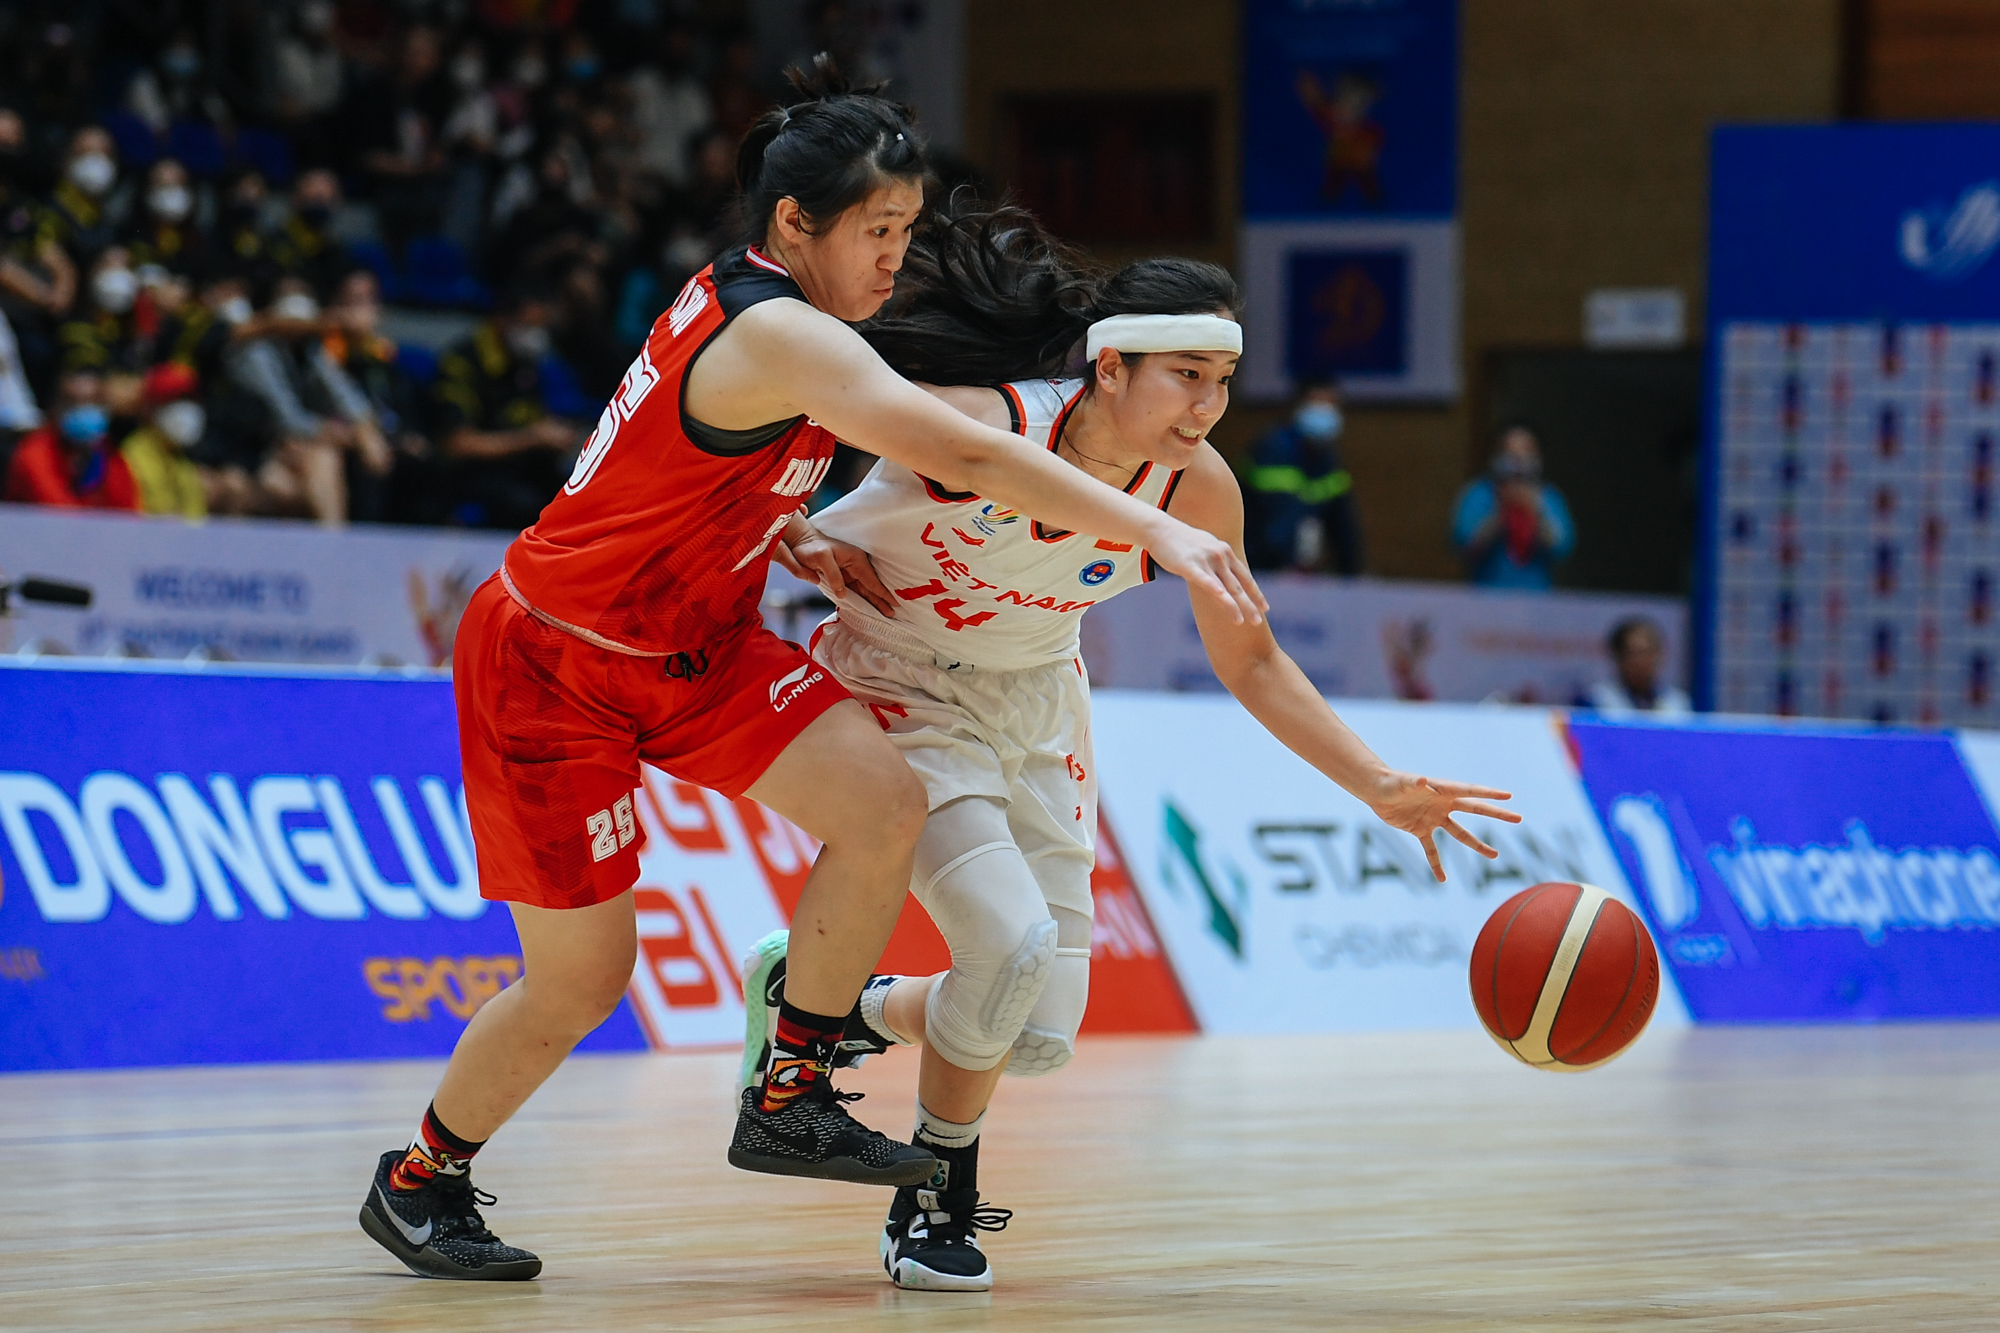 Tuyển nữ bóng rổ Việt Nam thua trước Indonesia nhưng thắng trong lòng người hâm mộ - Ảnh 8.